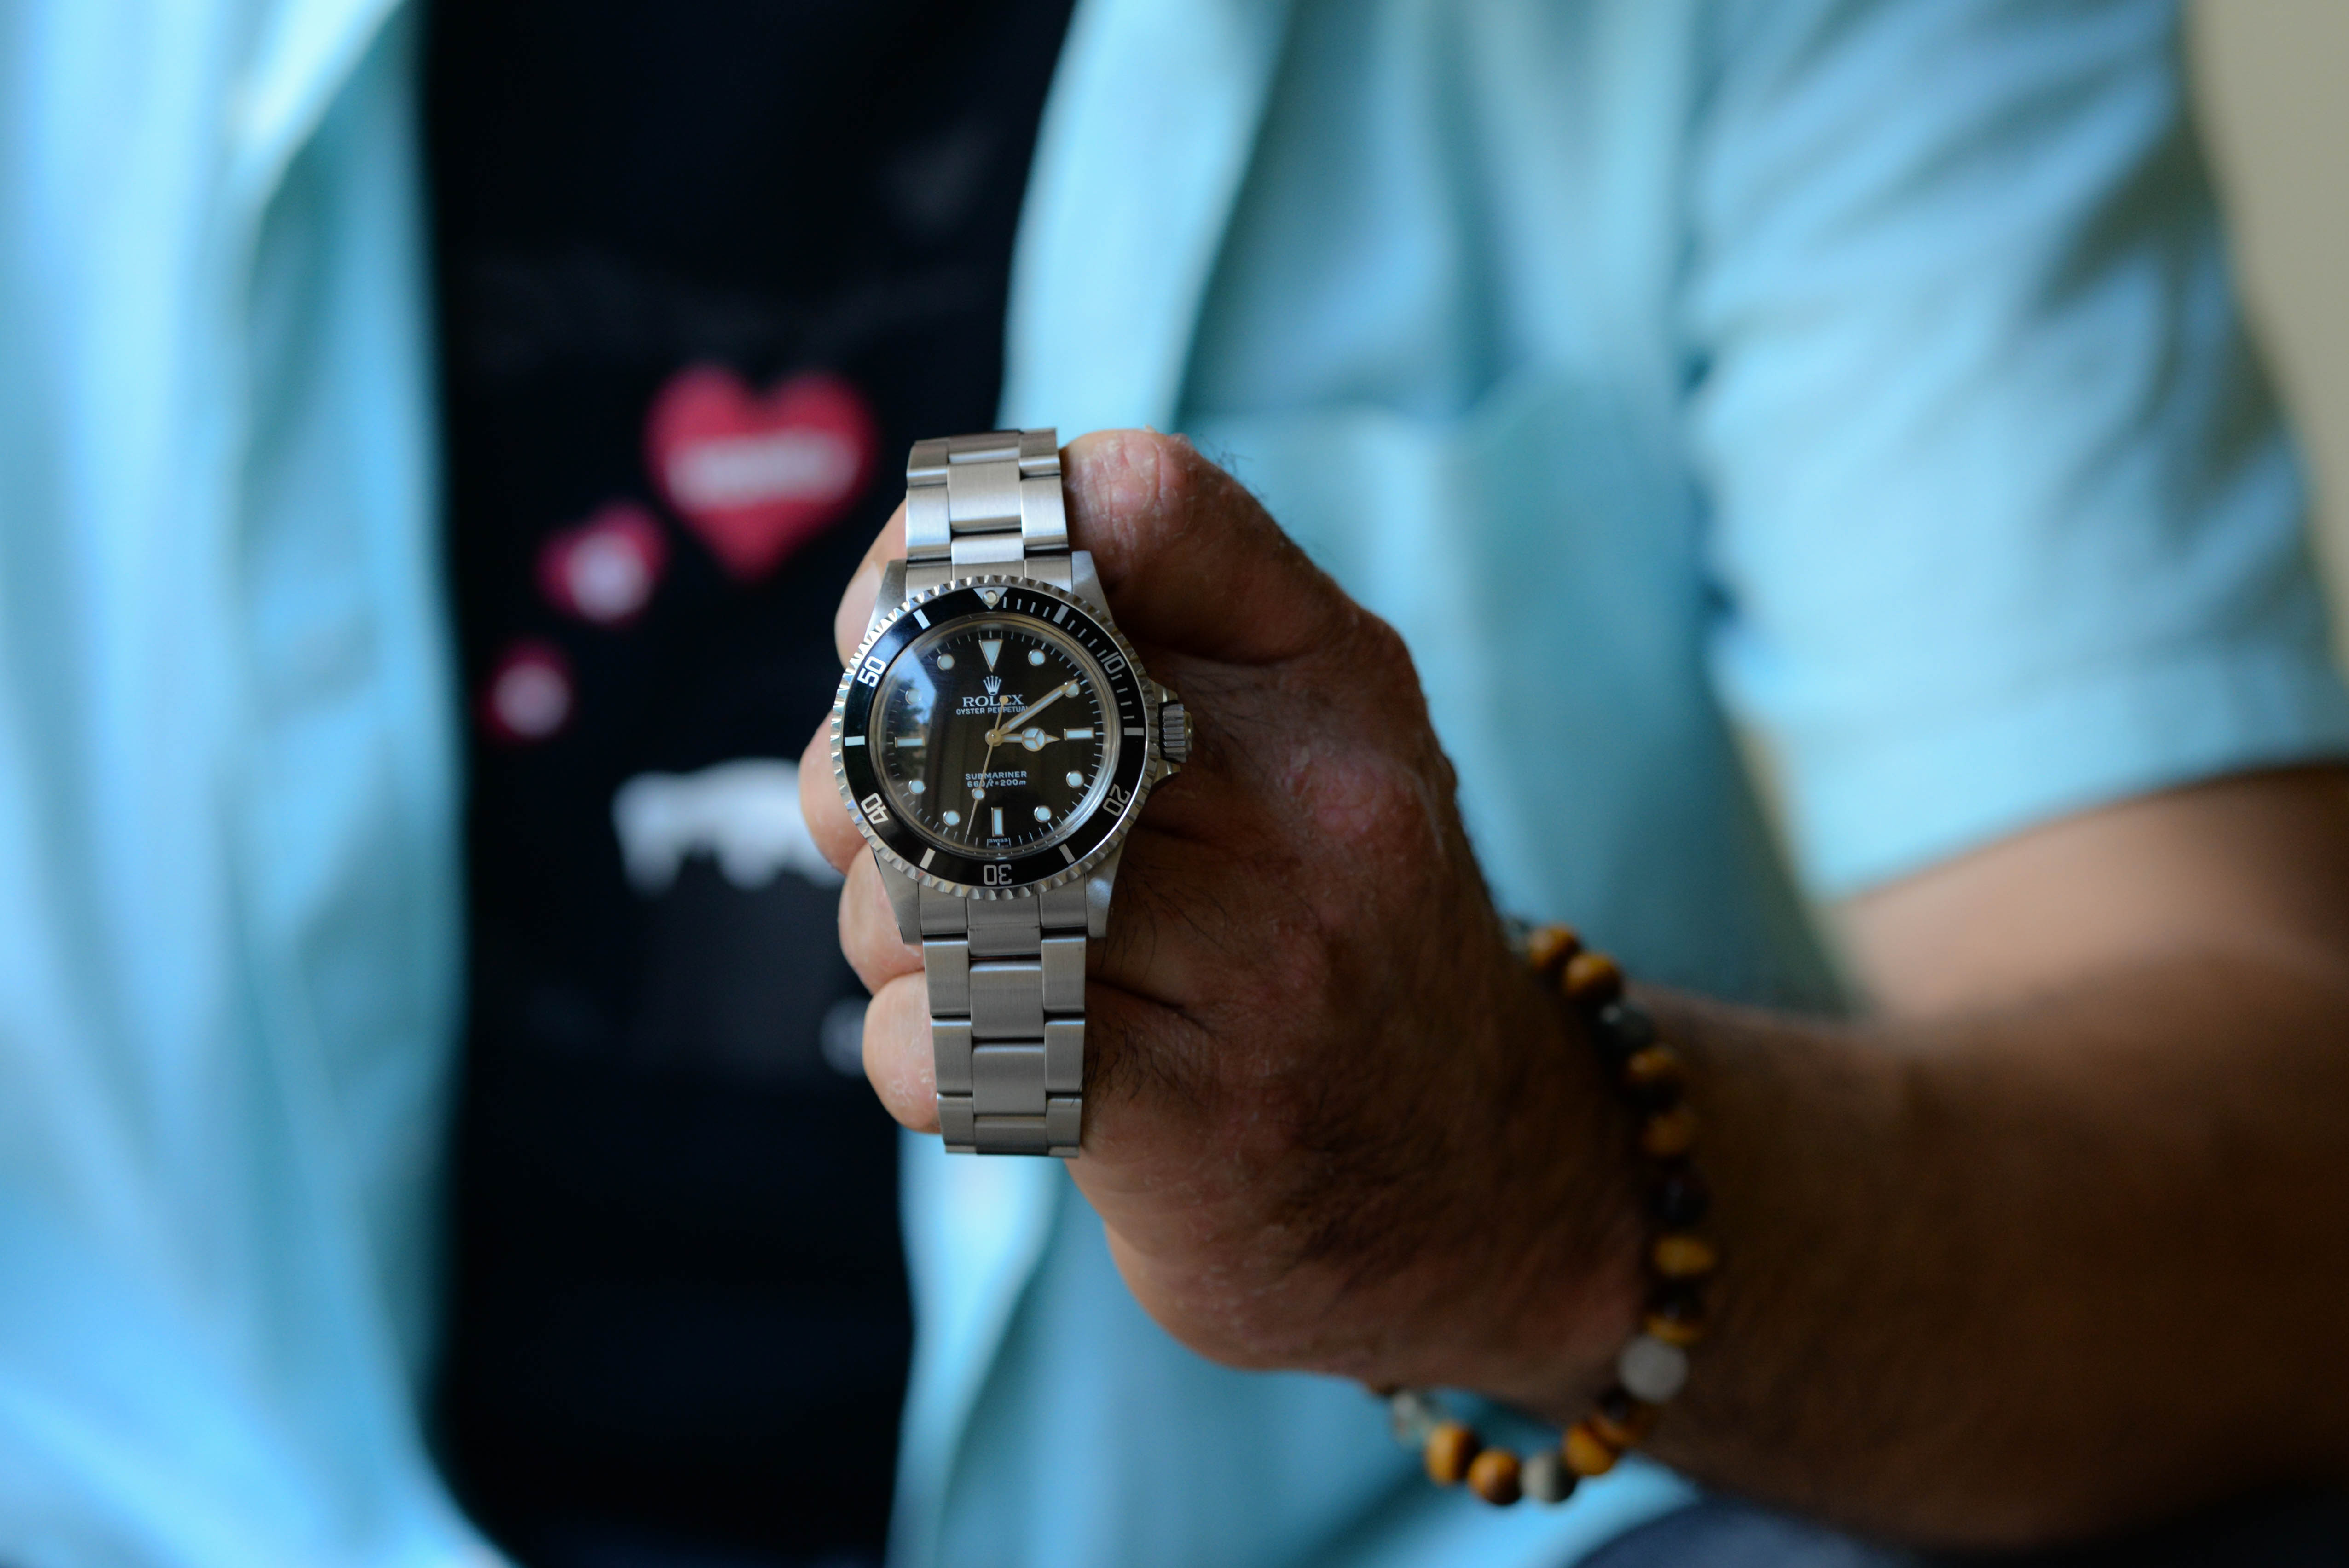 20年前に友人から購入した腕時計、ロレックス サブマリーナ Ref.5513 